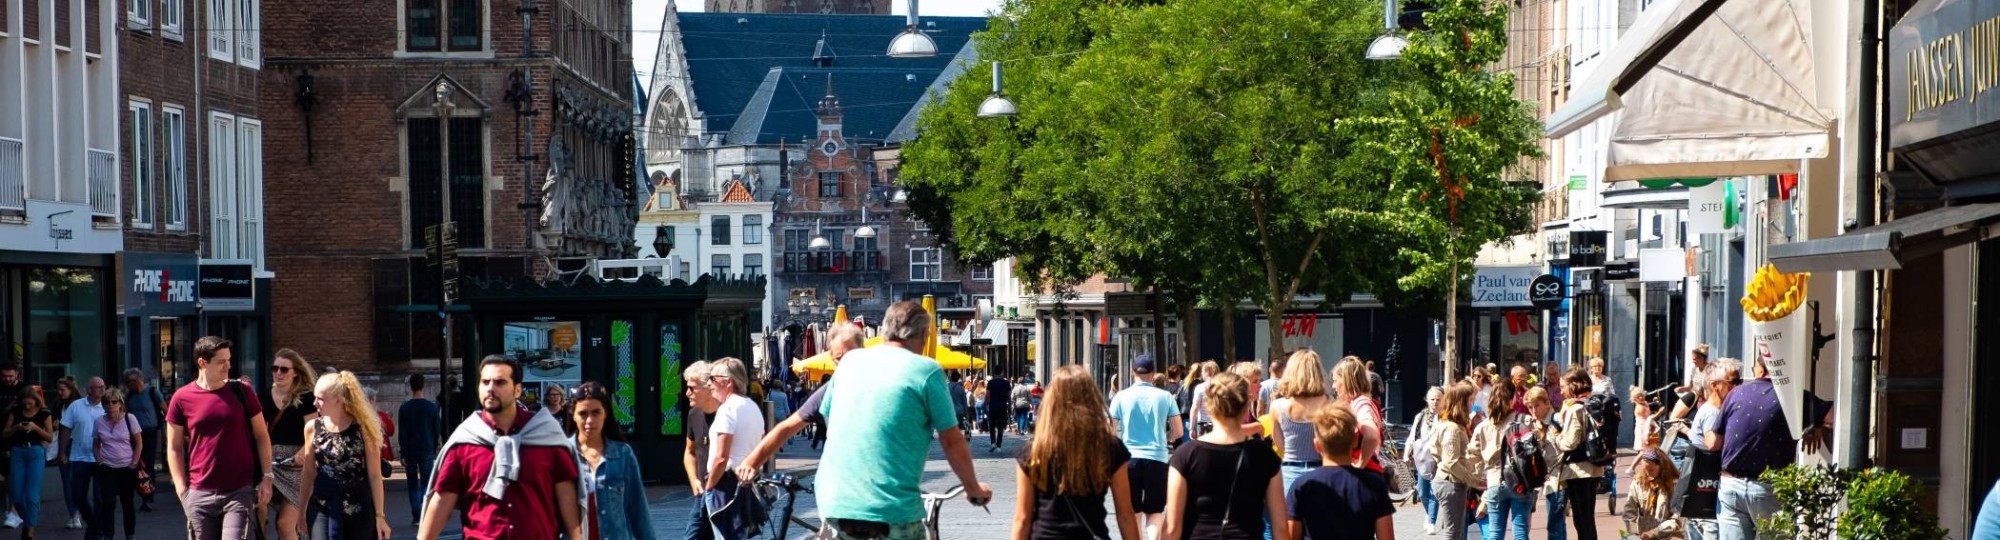 Nijmegen mensen in winkelstraat met kerk op achtergrond